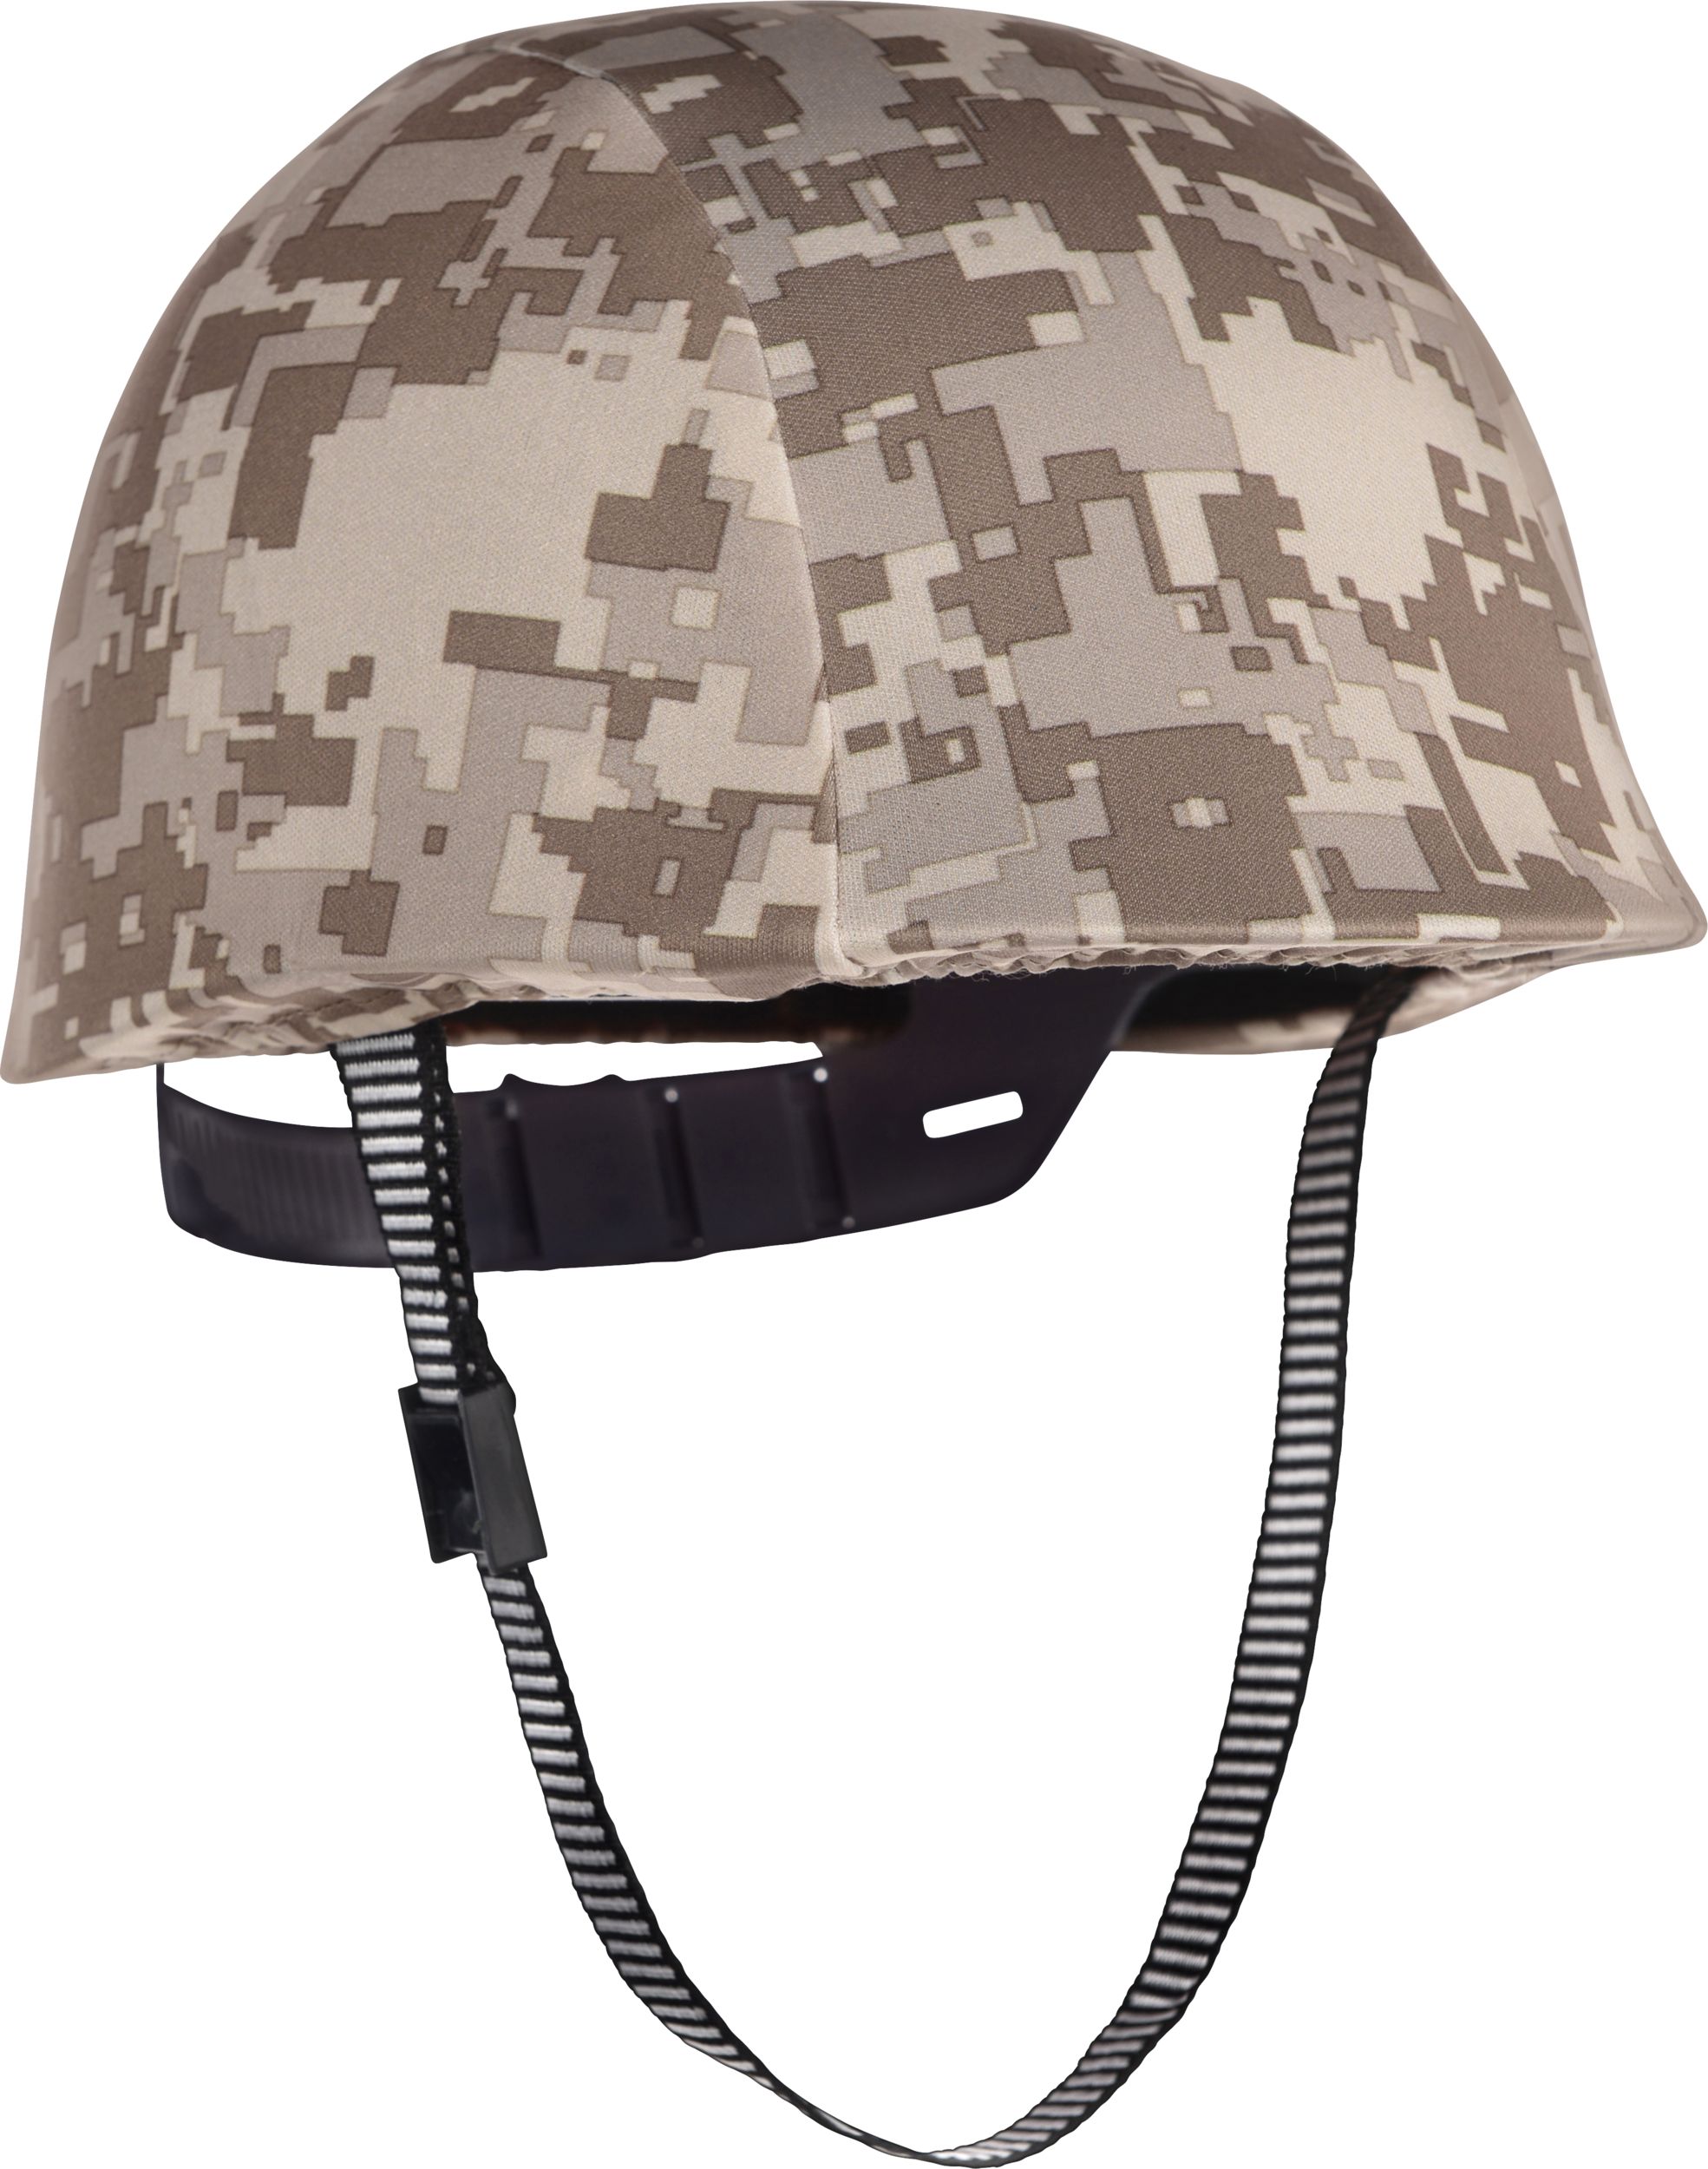 Casque militaire, camouflage, taille unique, accessoire de costume